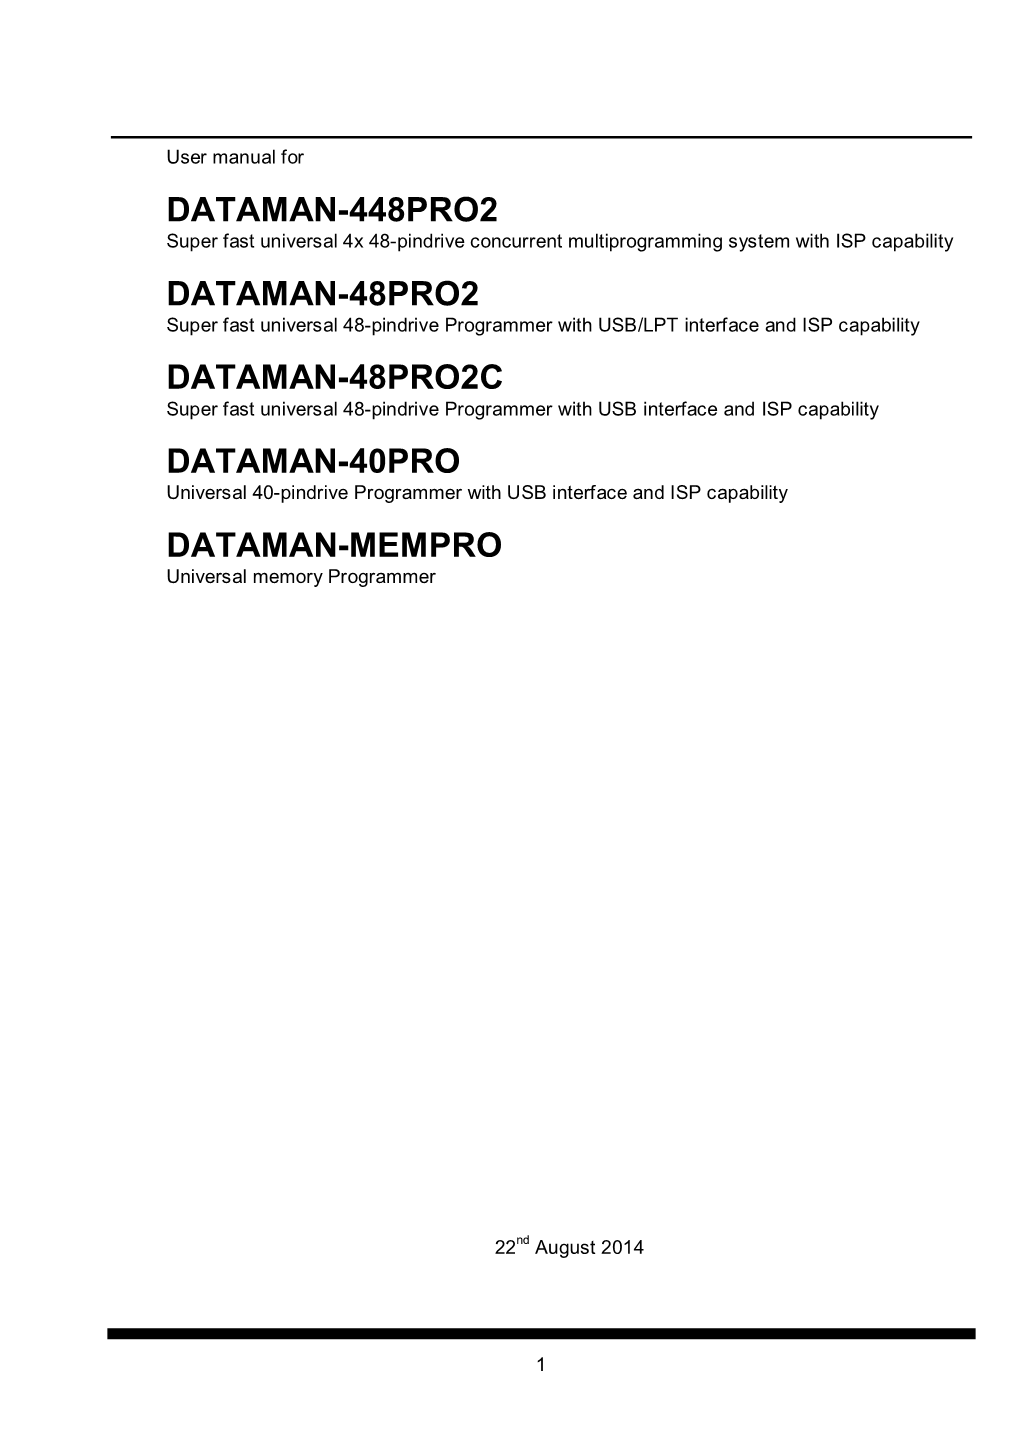 Dataman 40Pro Manual